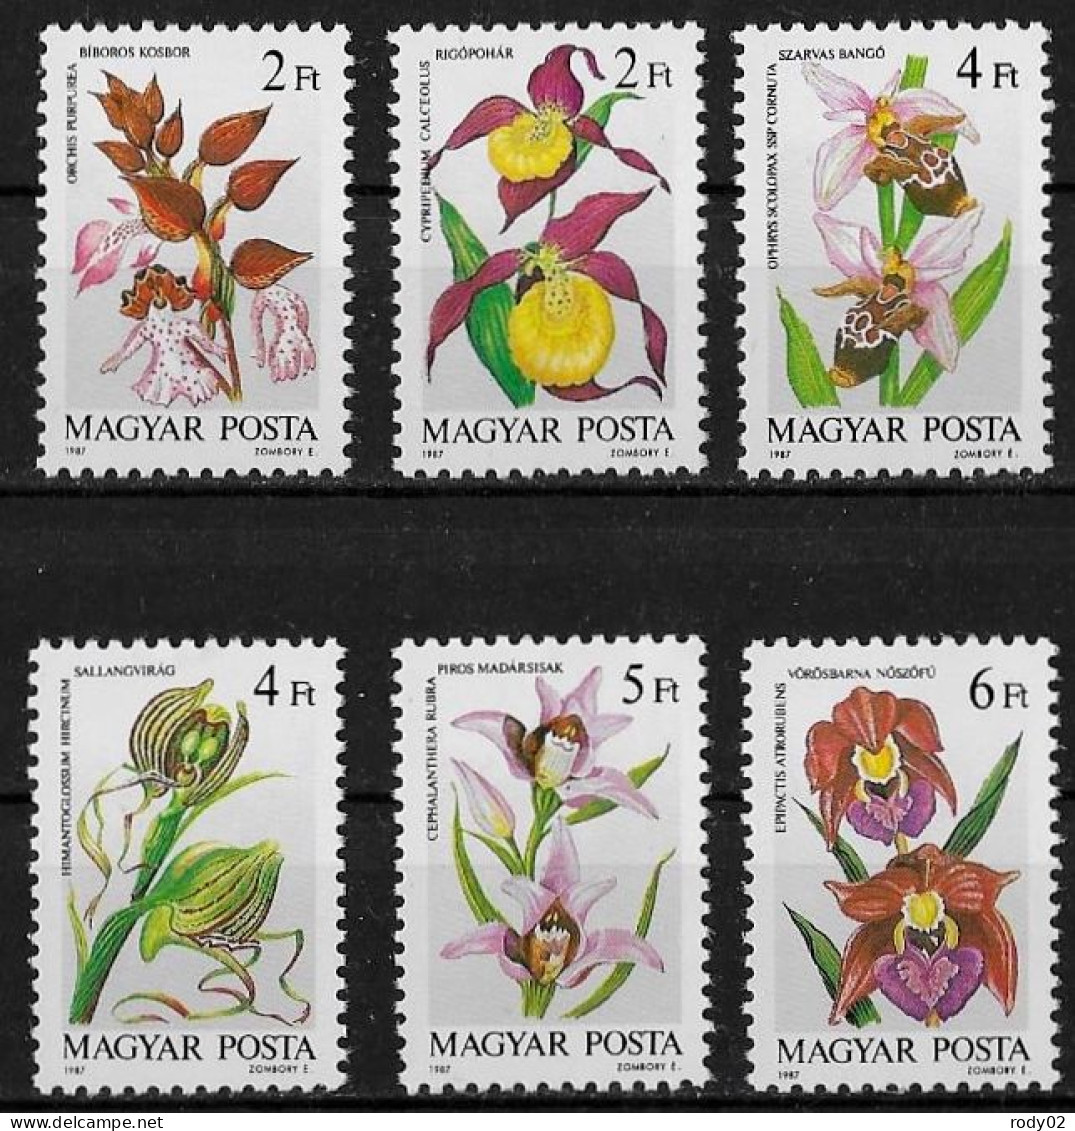 HONGRIE - FLEURS - ORCHIDEES - N° 3129 A 3134 - NEUF** MNH - Orchidées